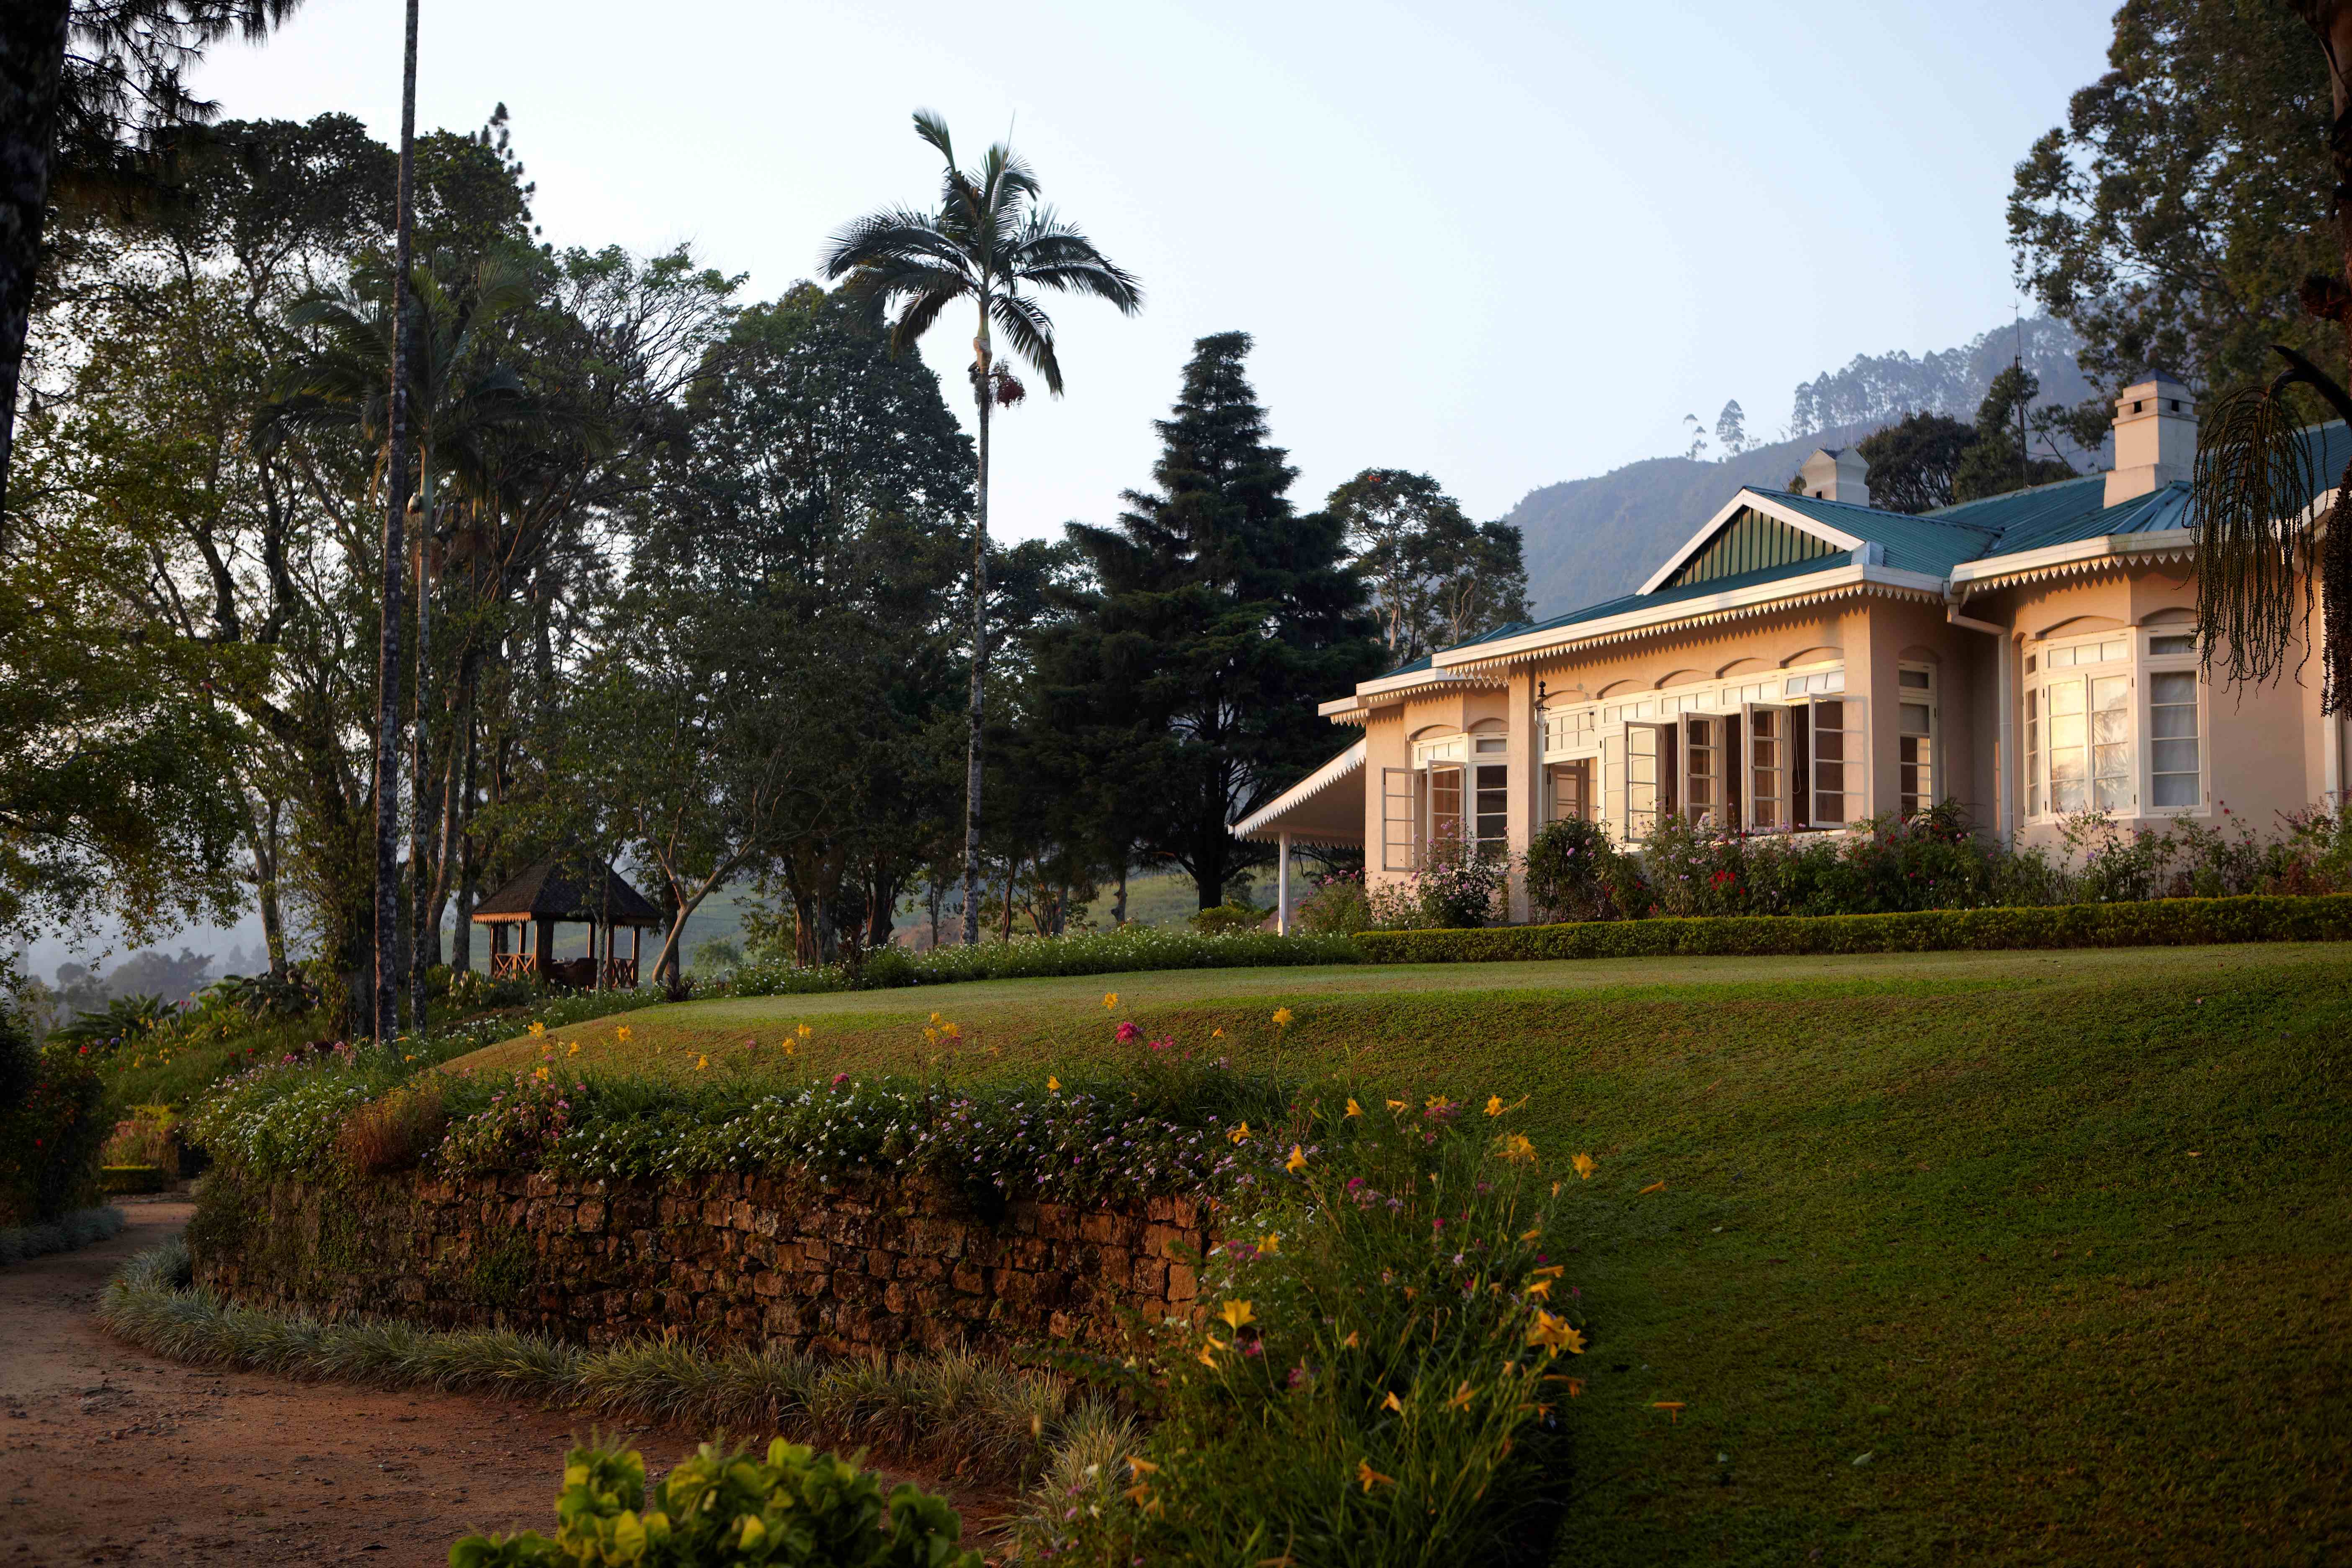  Ngôi nhà cổ của các cựu chủ trang trại trà đã được phục dựng tại vùng đất trà Ceylon